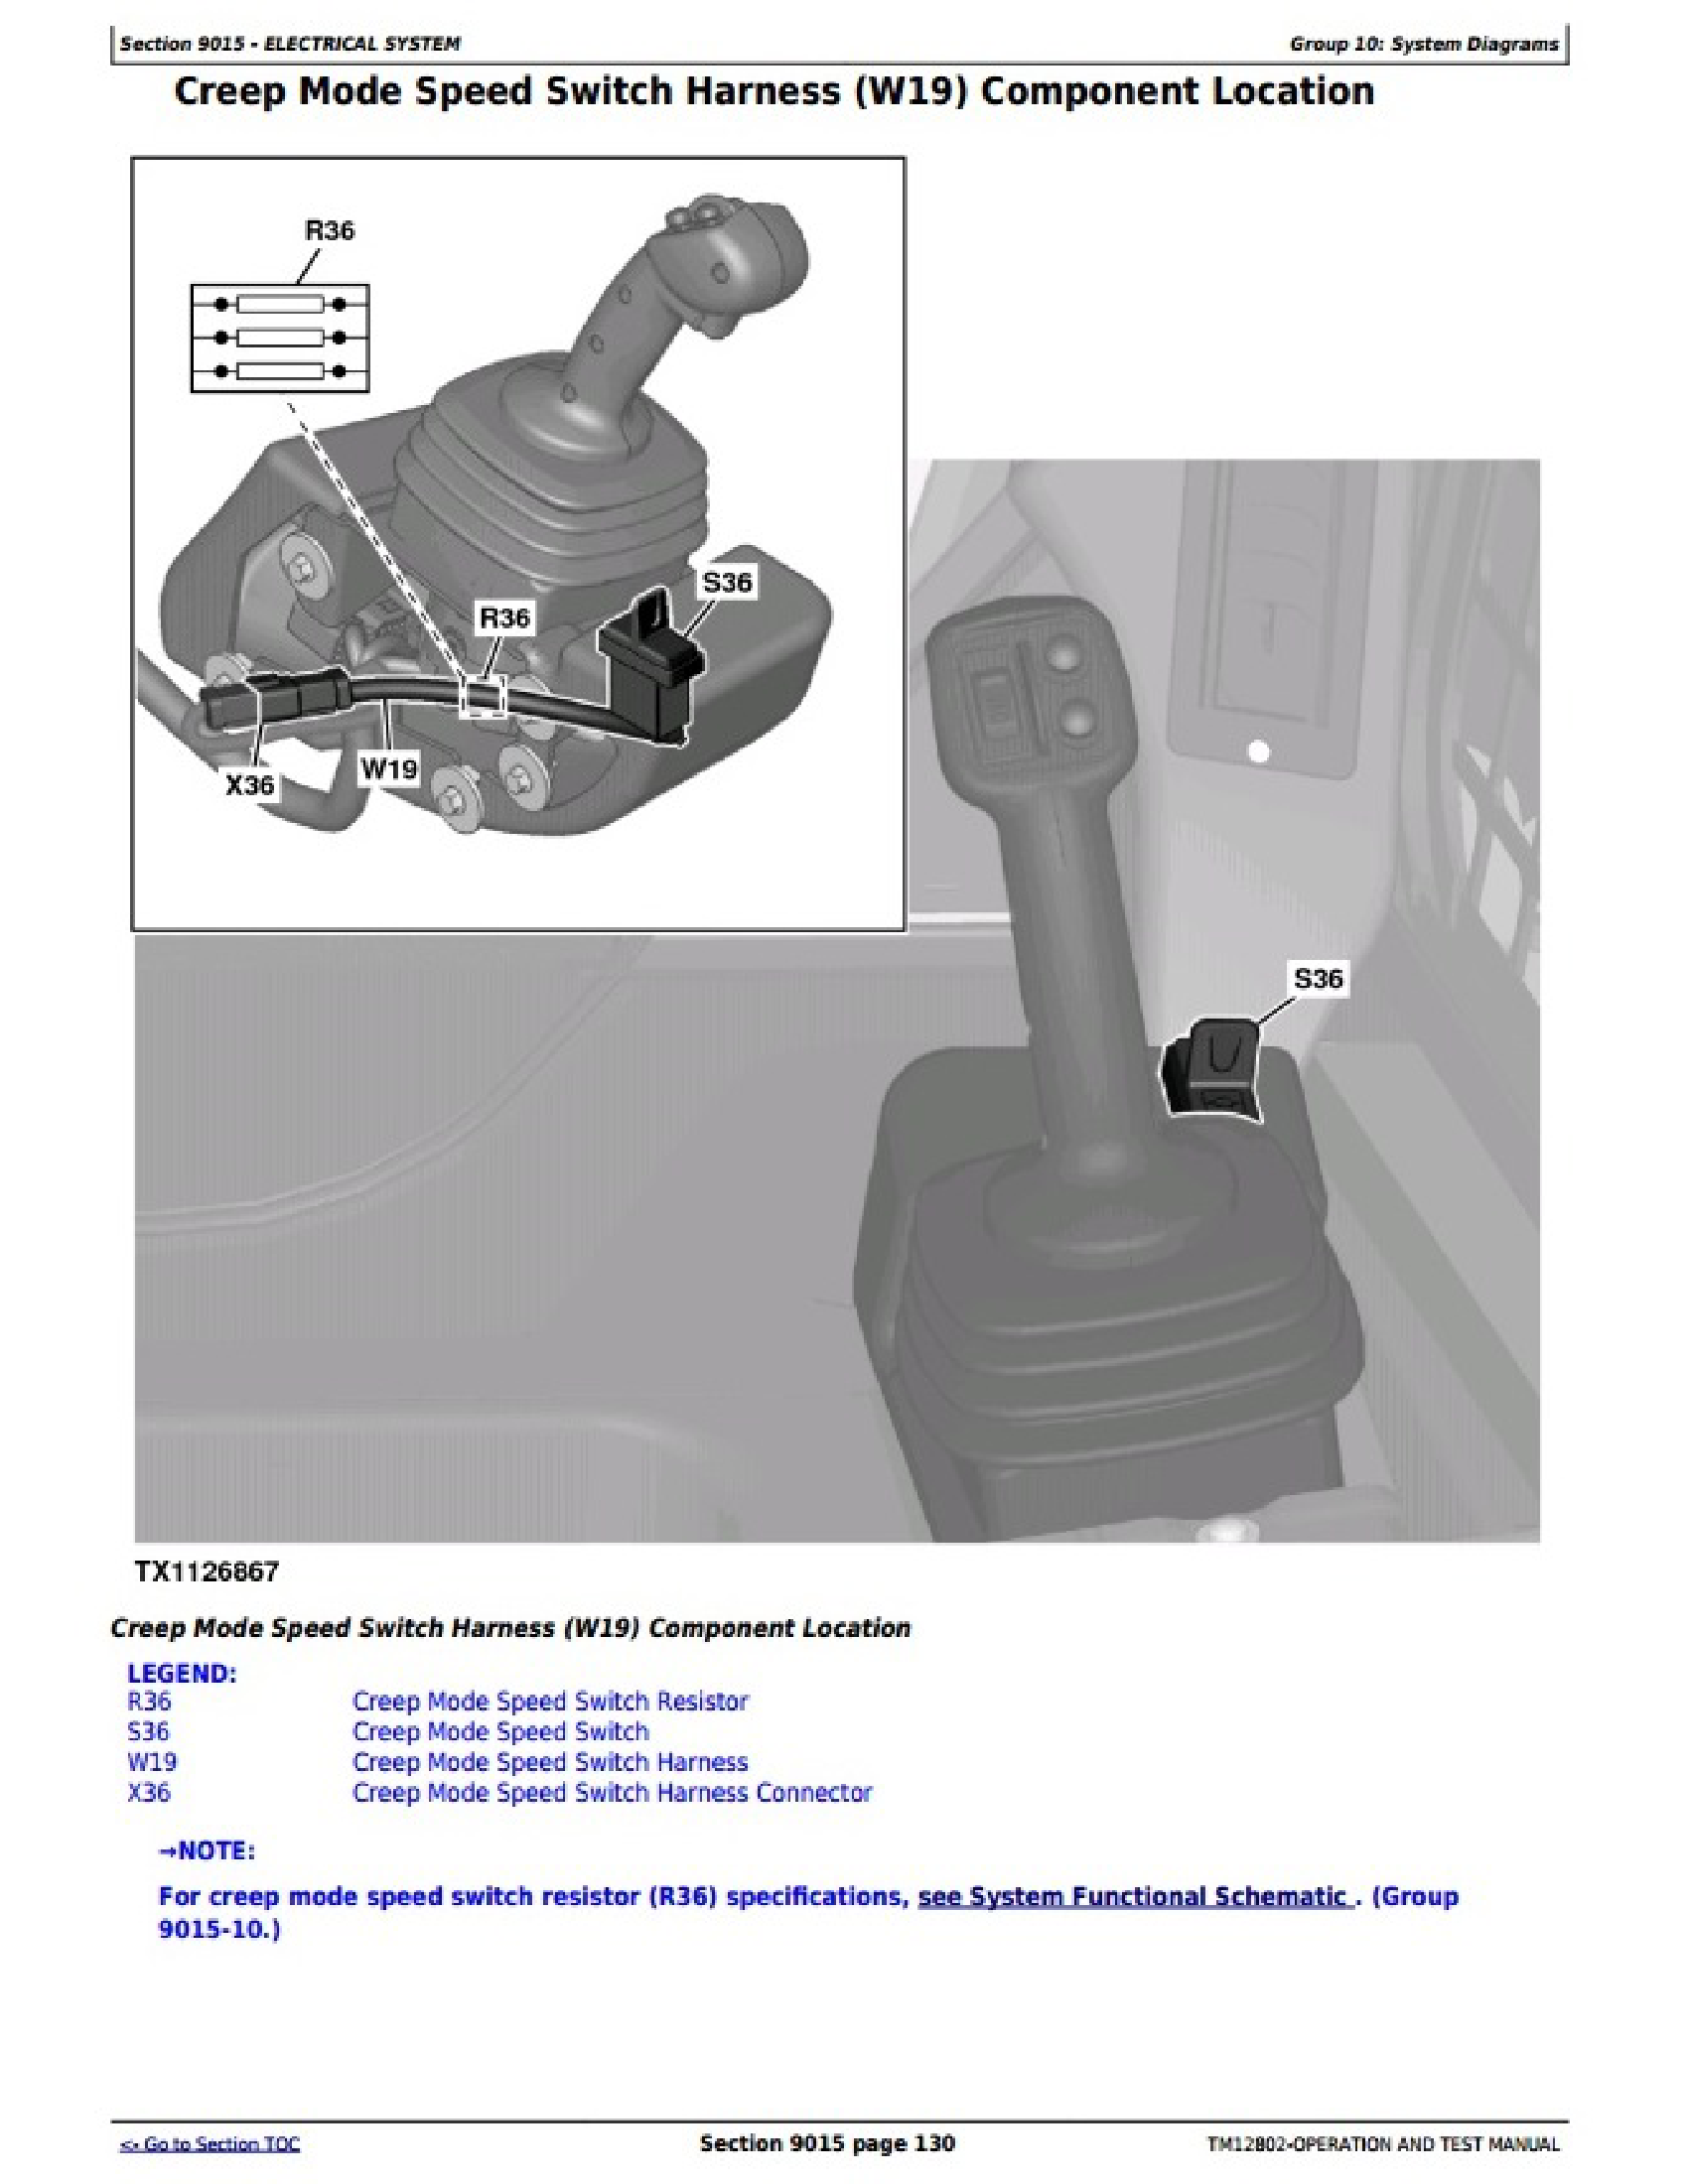 John Deere 4455 manual pdf